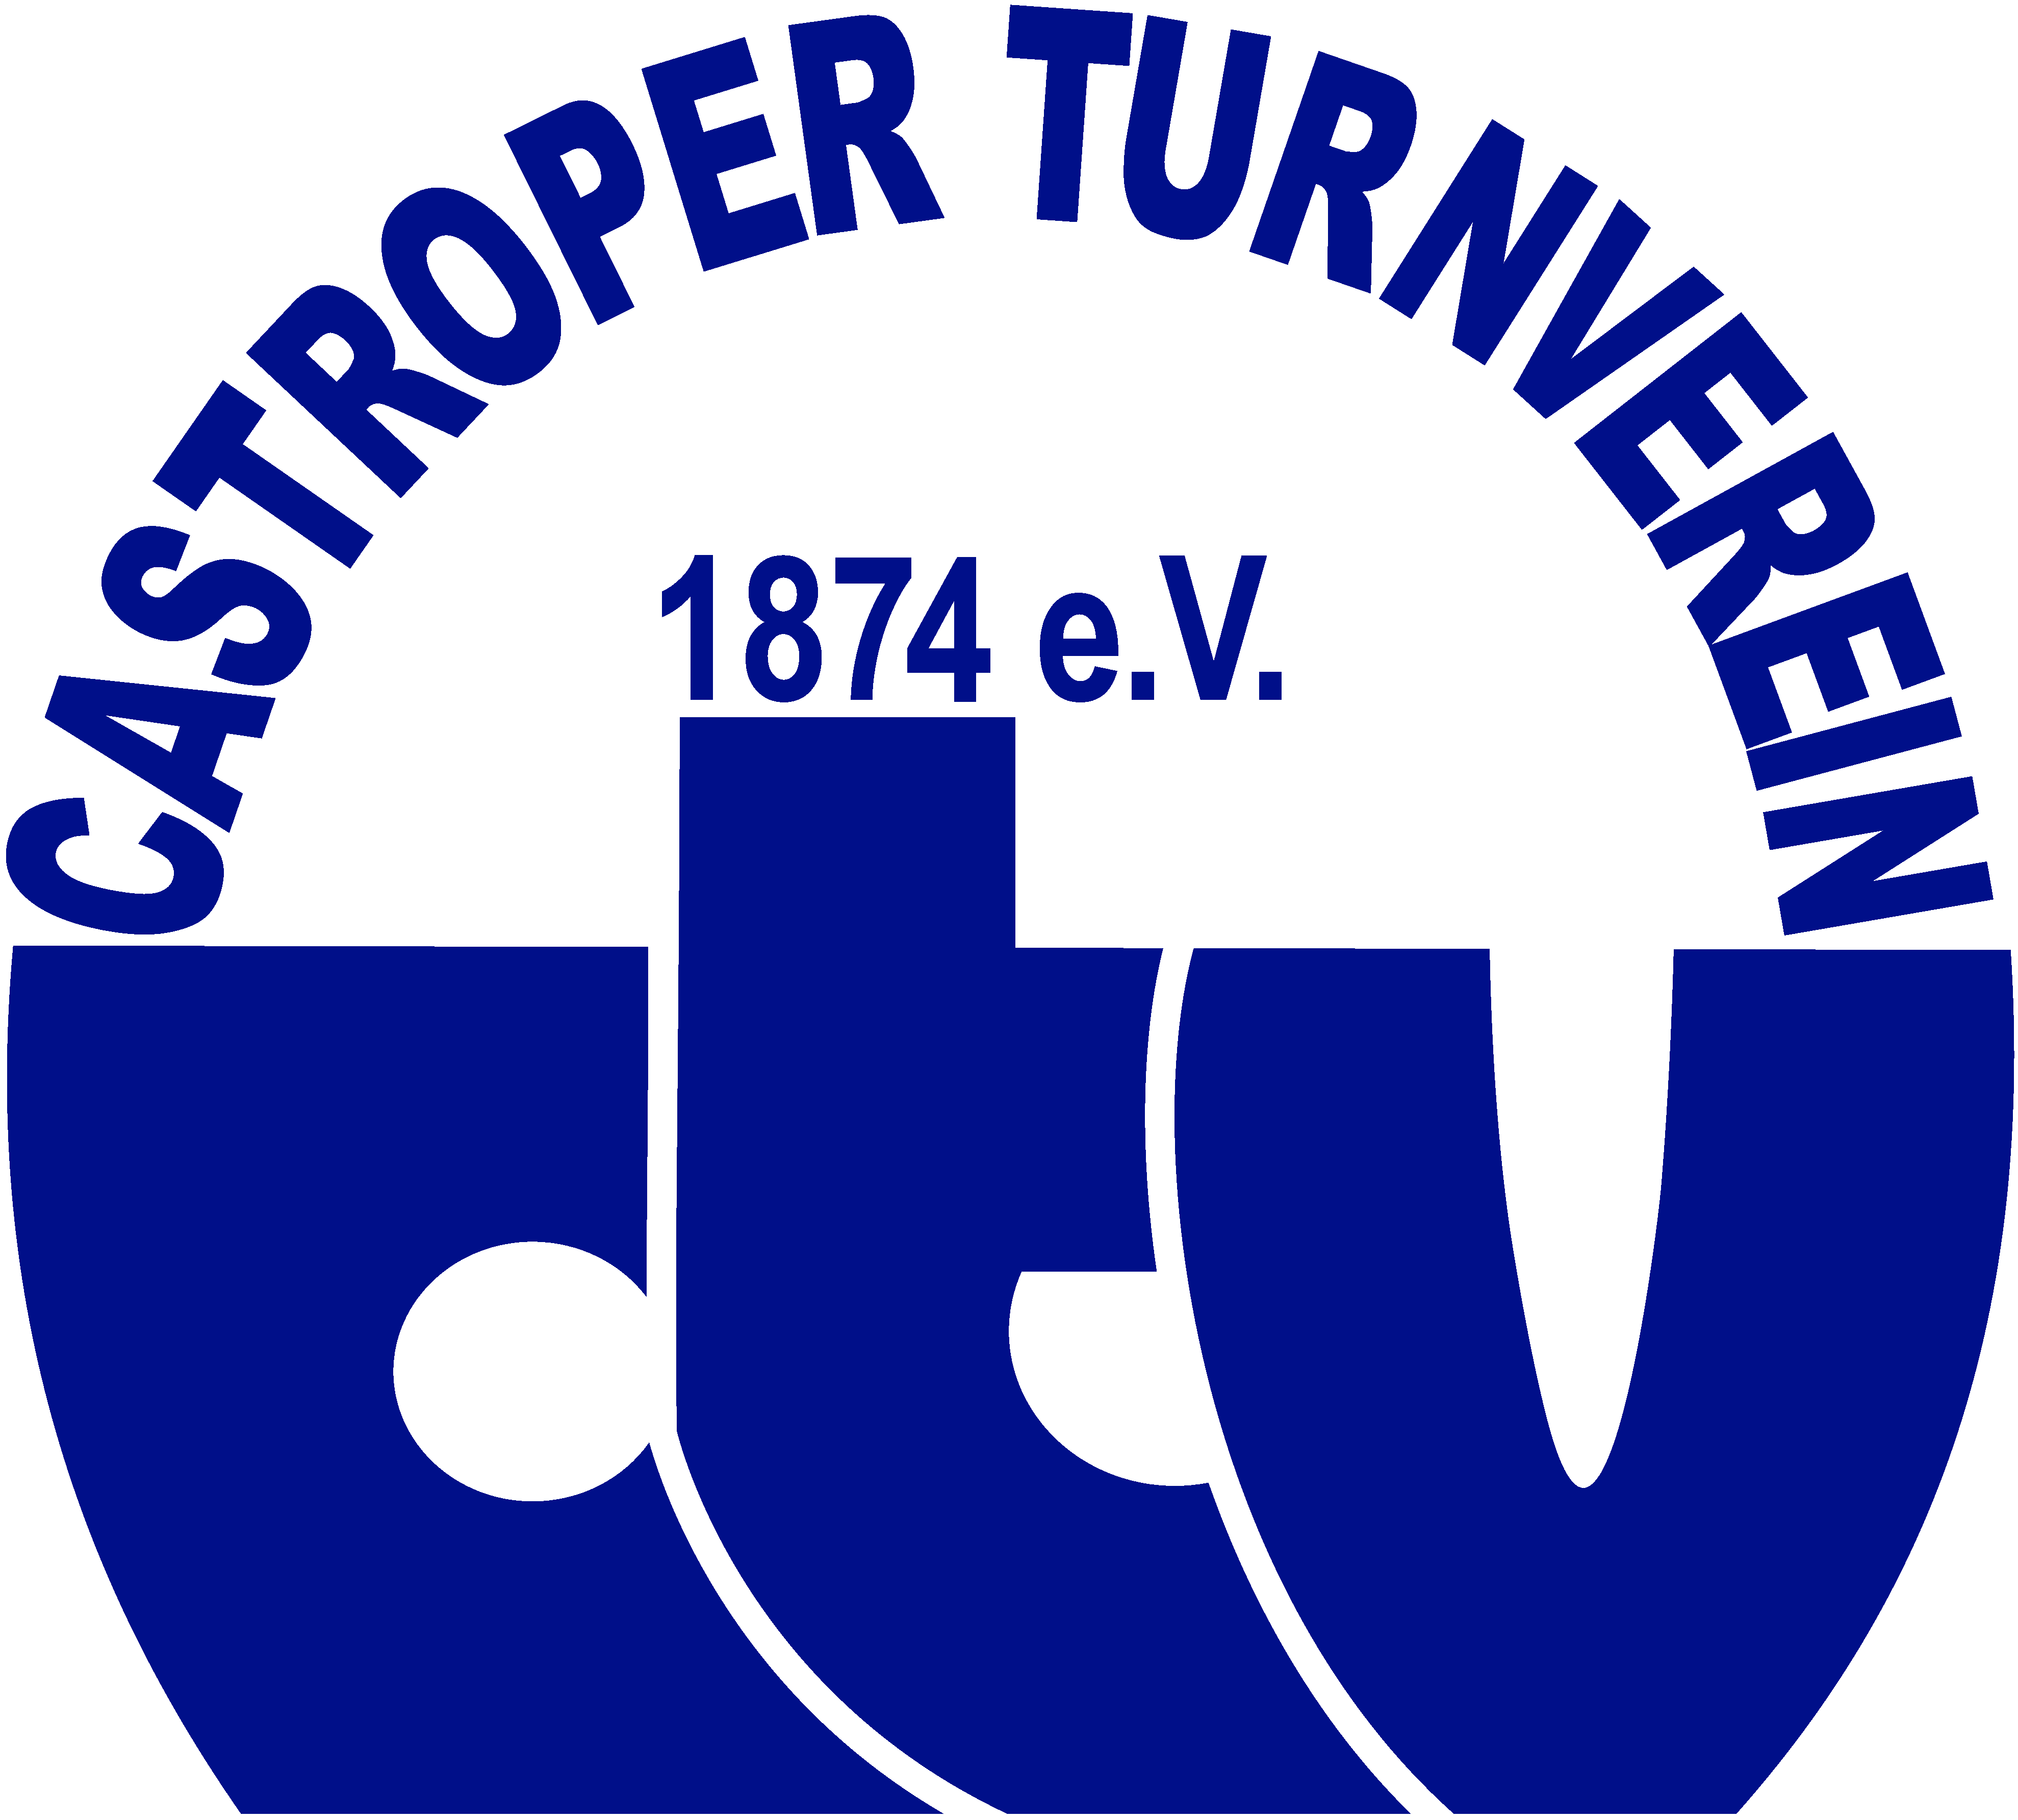 Castroper Turnverein 1874 e.V.